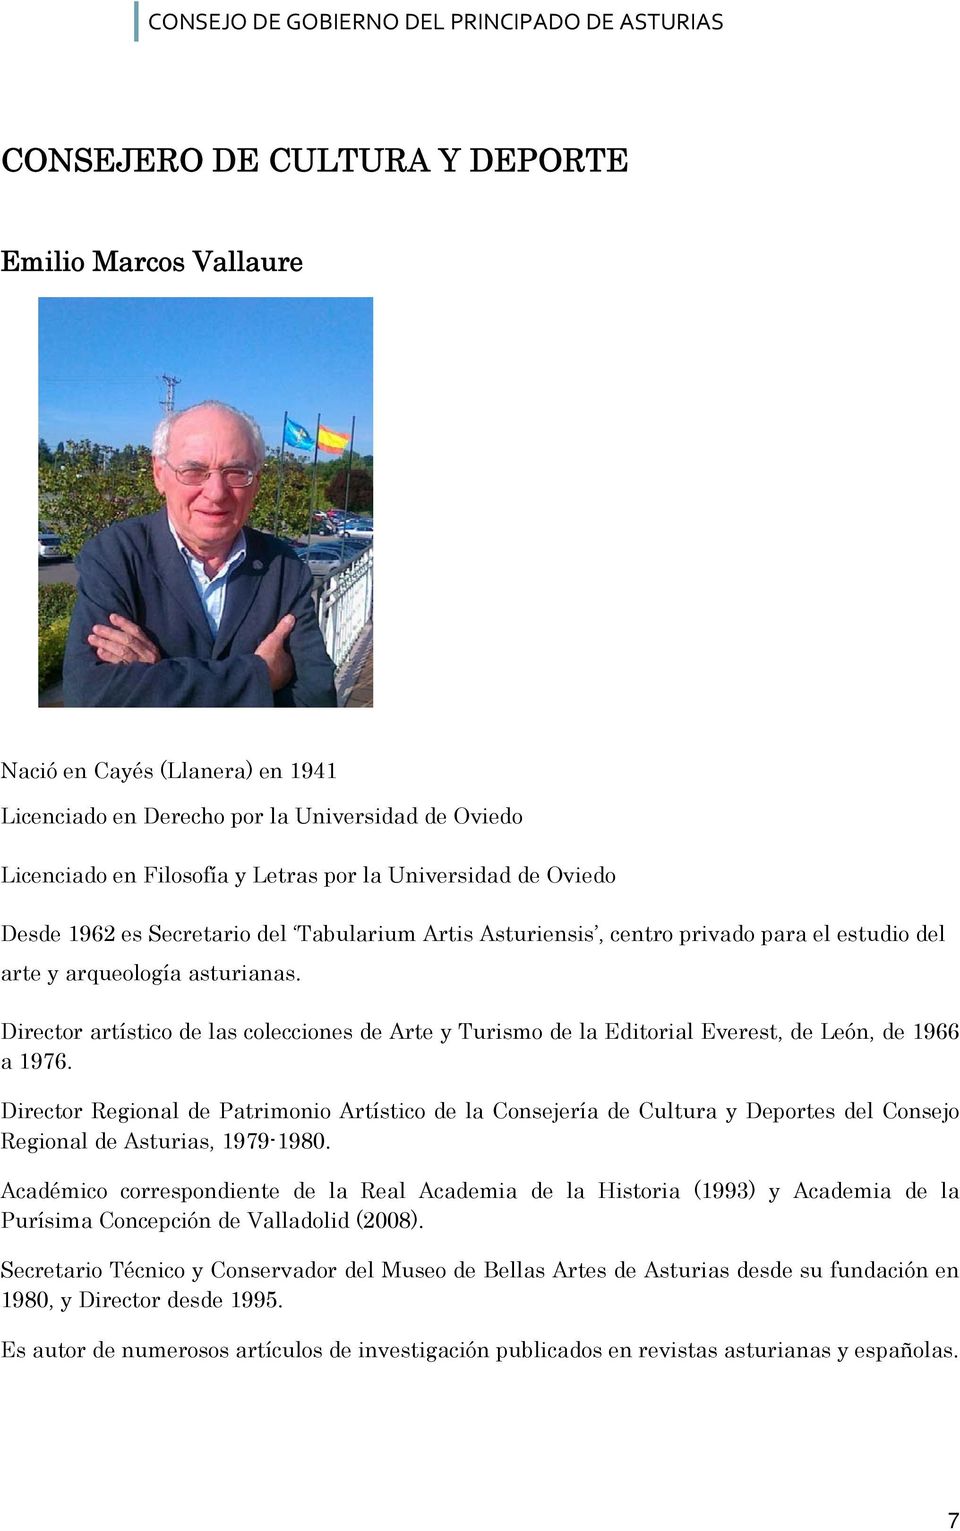 Director artístico de las colecciones de Arte y Turismo de la Editorial Everest, de León, de 1966 a 1976.